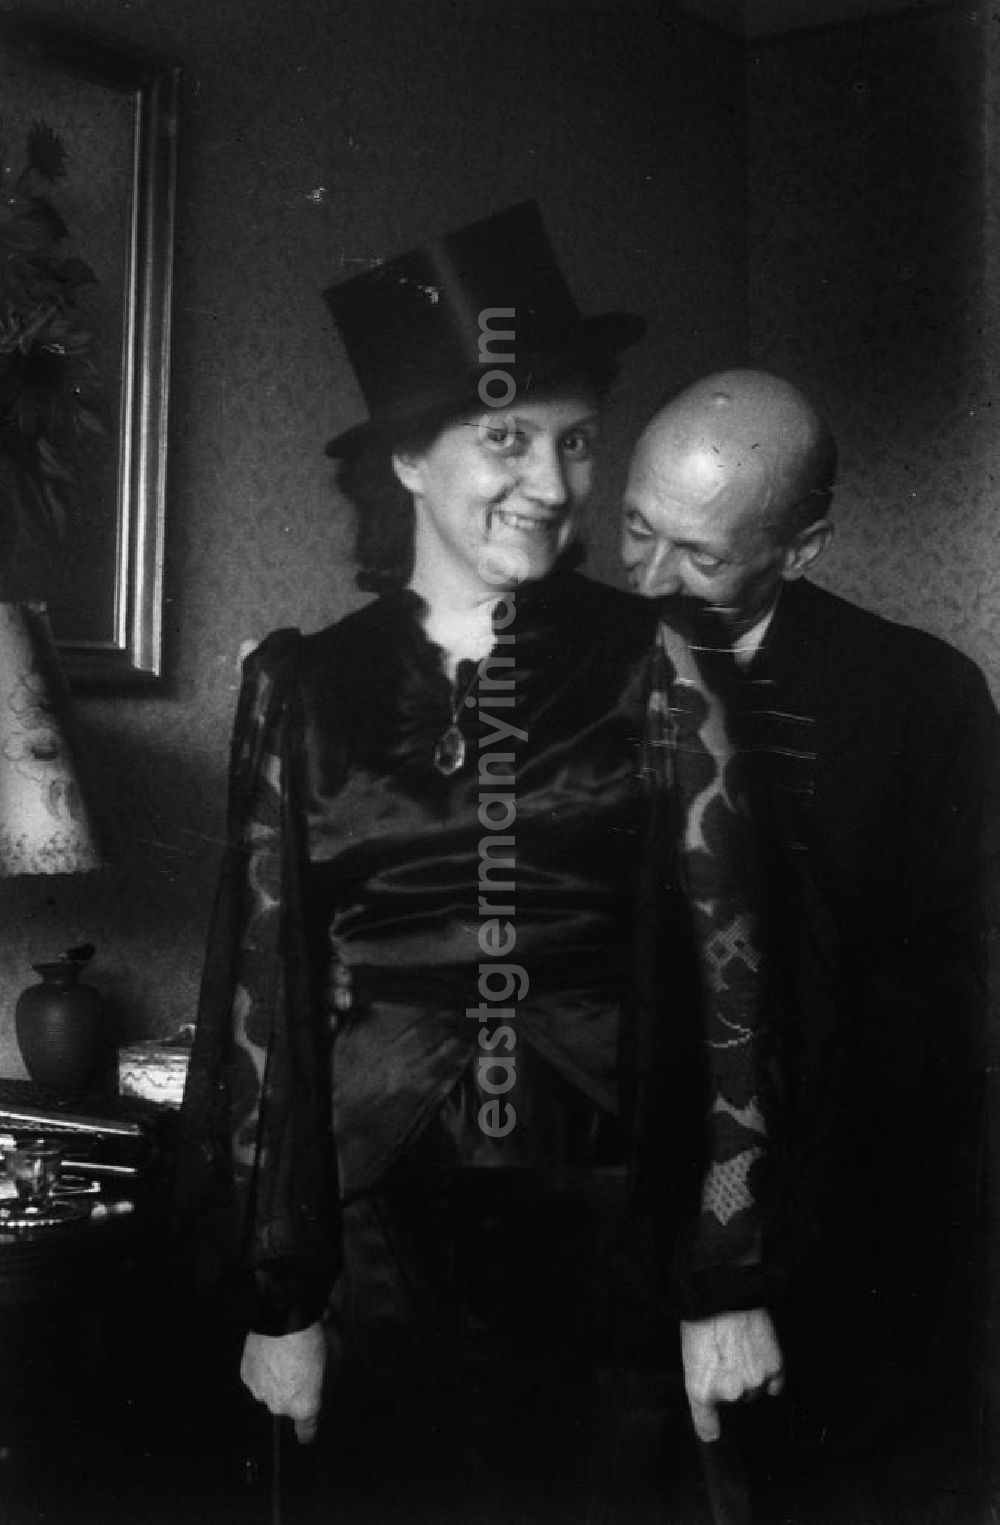 GDR image archive: Merseburg - Gäste auf einer Geburtstagsfeier haben Spaß. Frau posiert mit Zylinder / Hut. Guests have fun at a birthday party. A Woman has a topper / hat on her head.